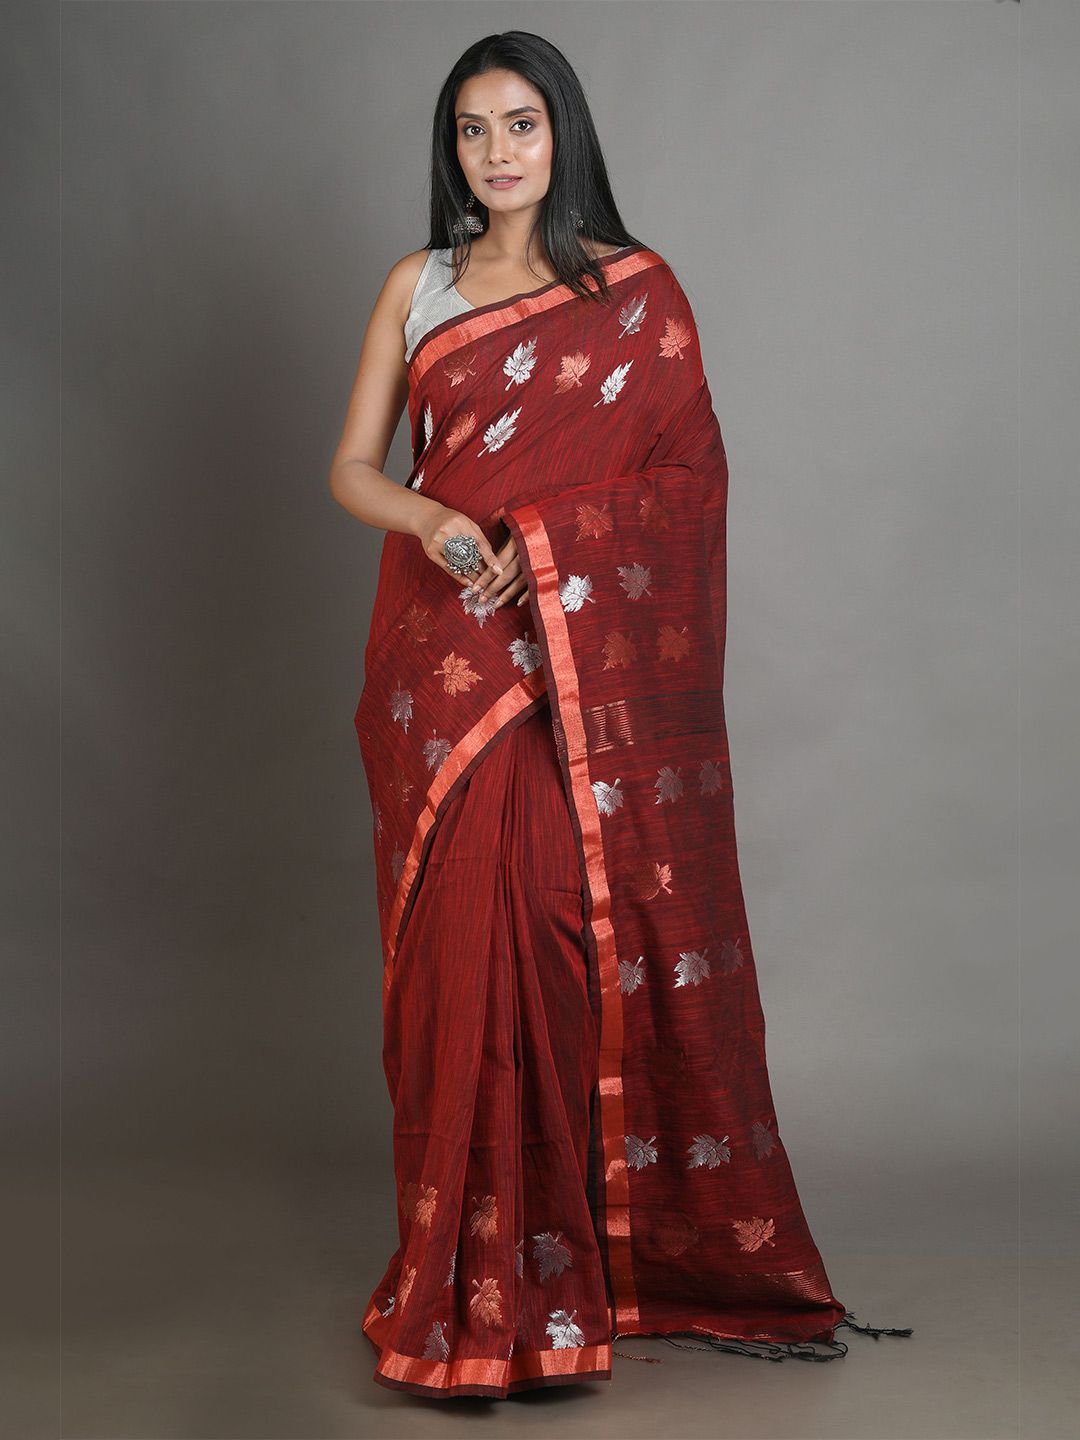 Arhi Red & Silver Woven Design Zari Pure Linen Saree Price in India